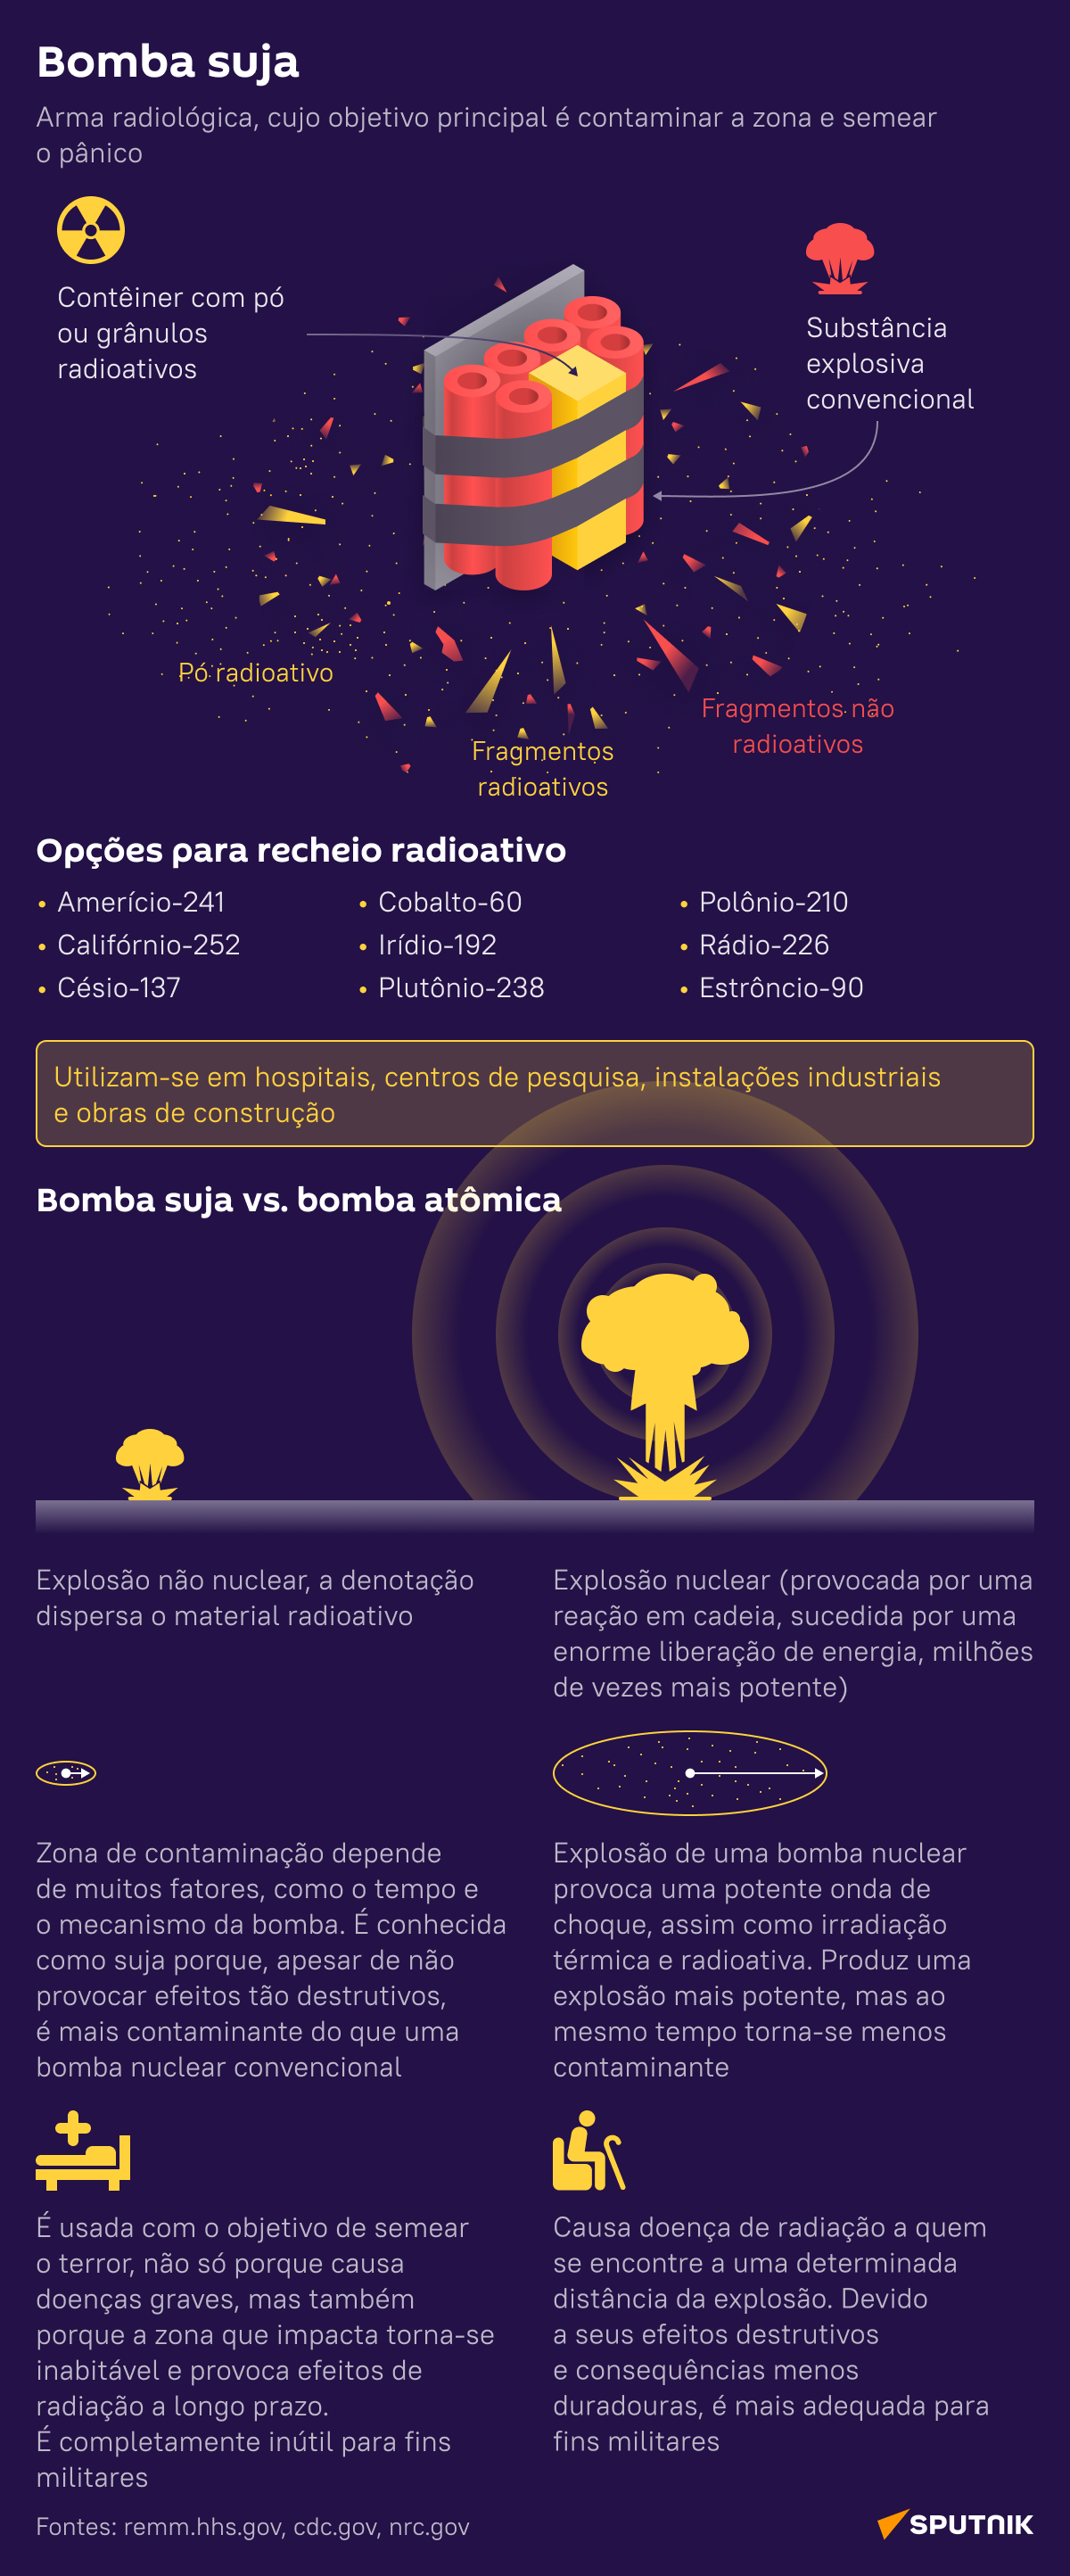 Bomba suja: funcionamento e consequências do uso - Sputnik Brasil